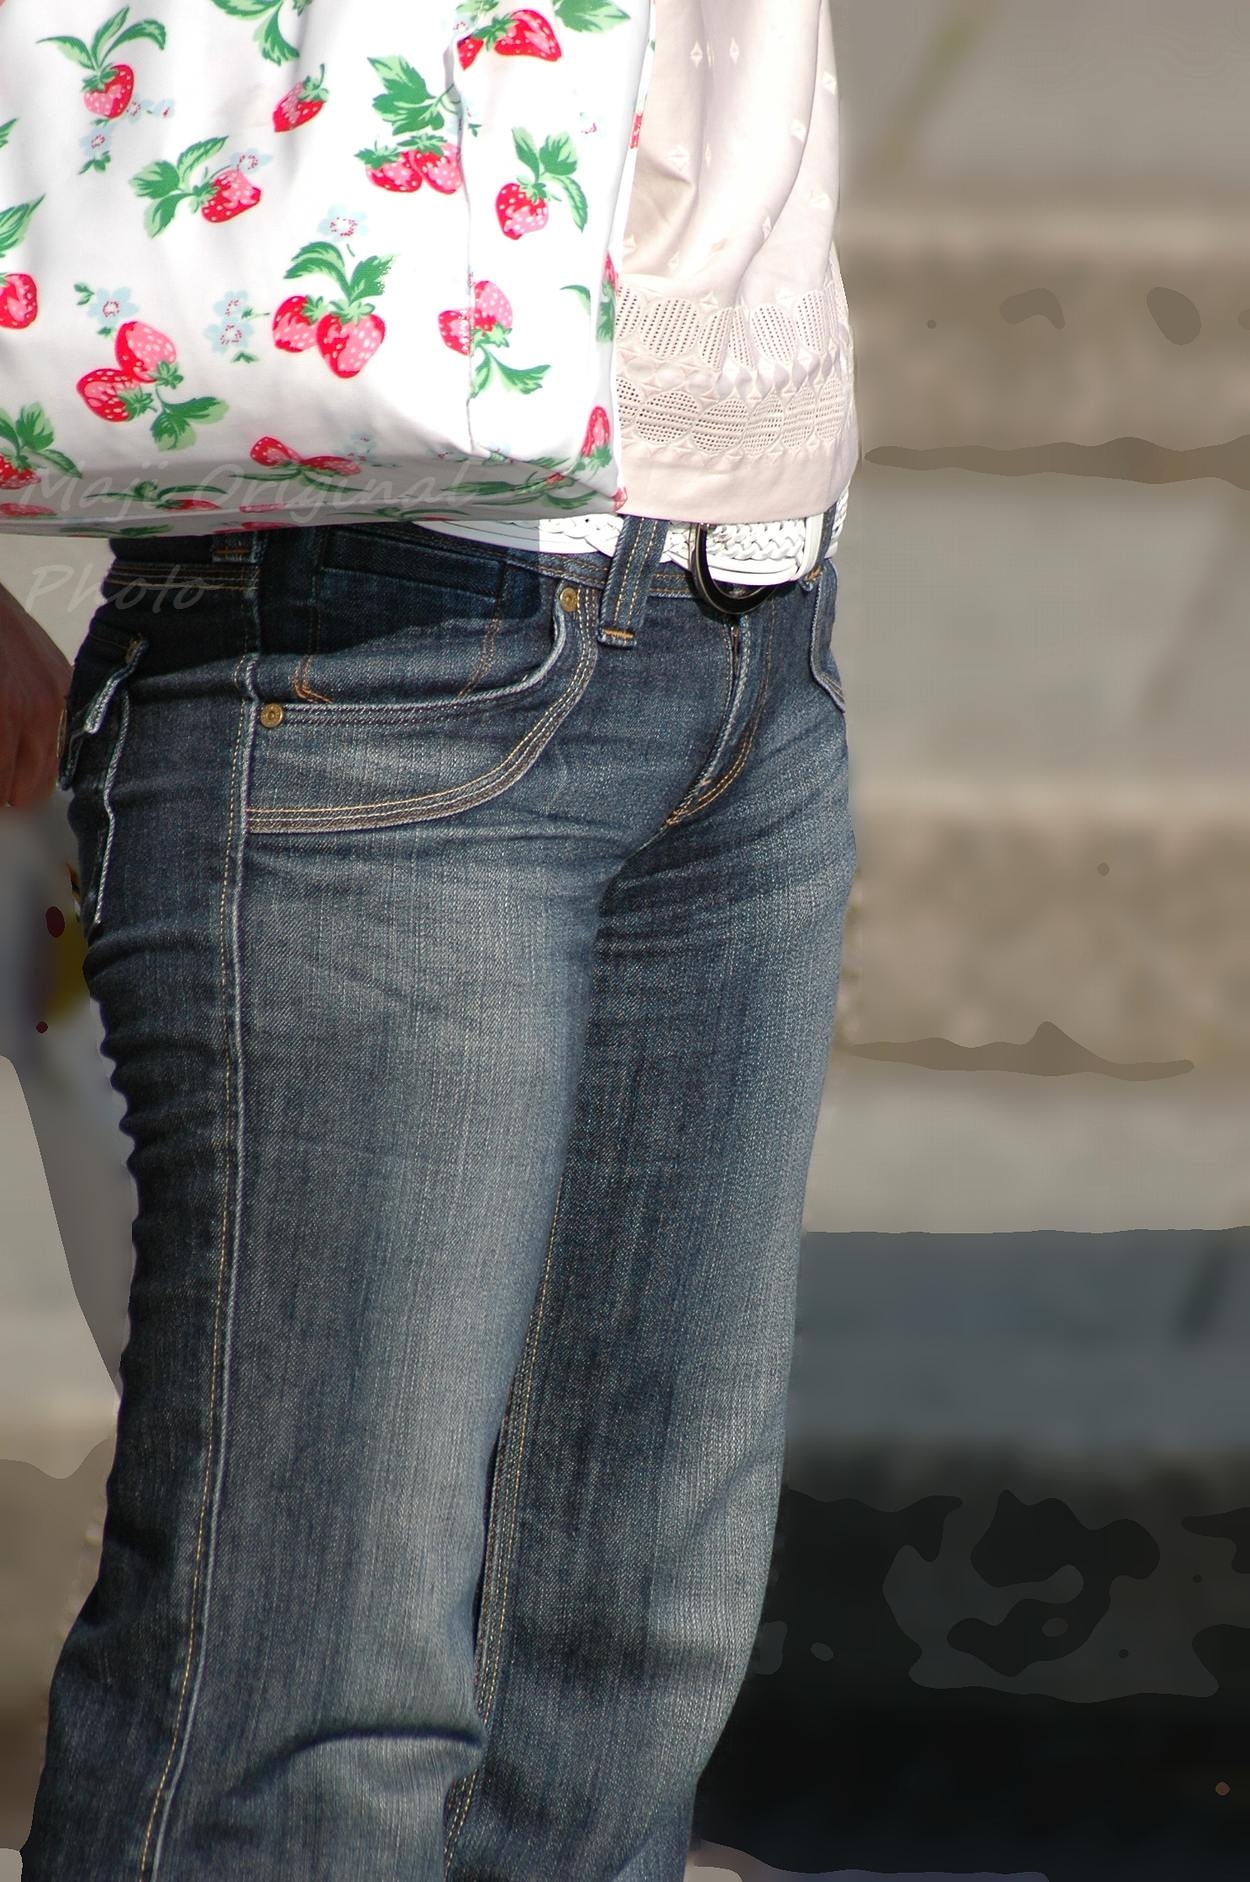 パンツルックの女性の股間を撮ったVラインのライン街撮り素人エロ画像04